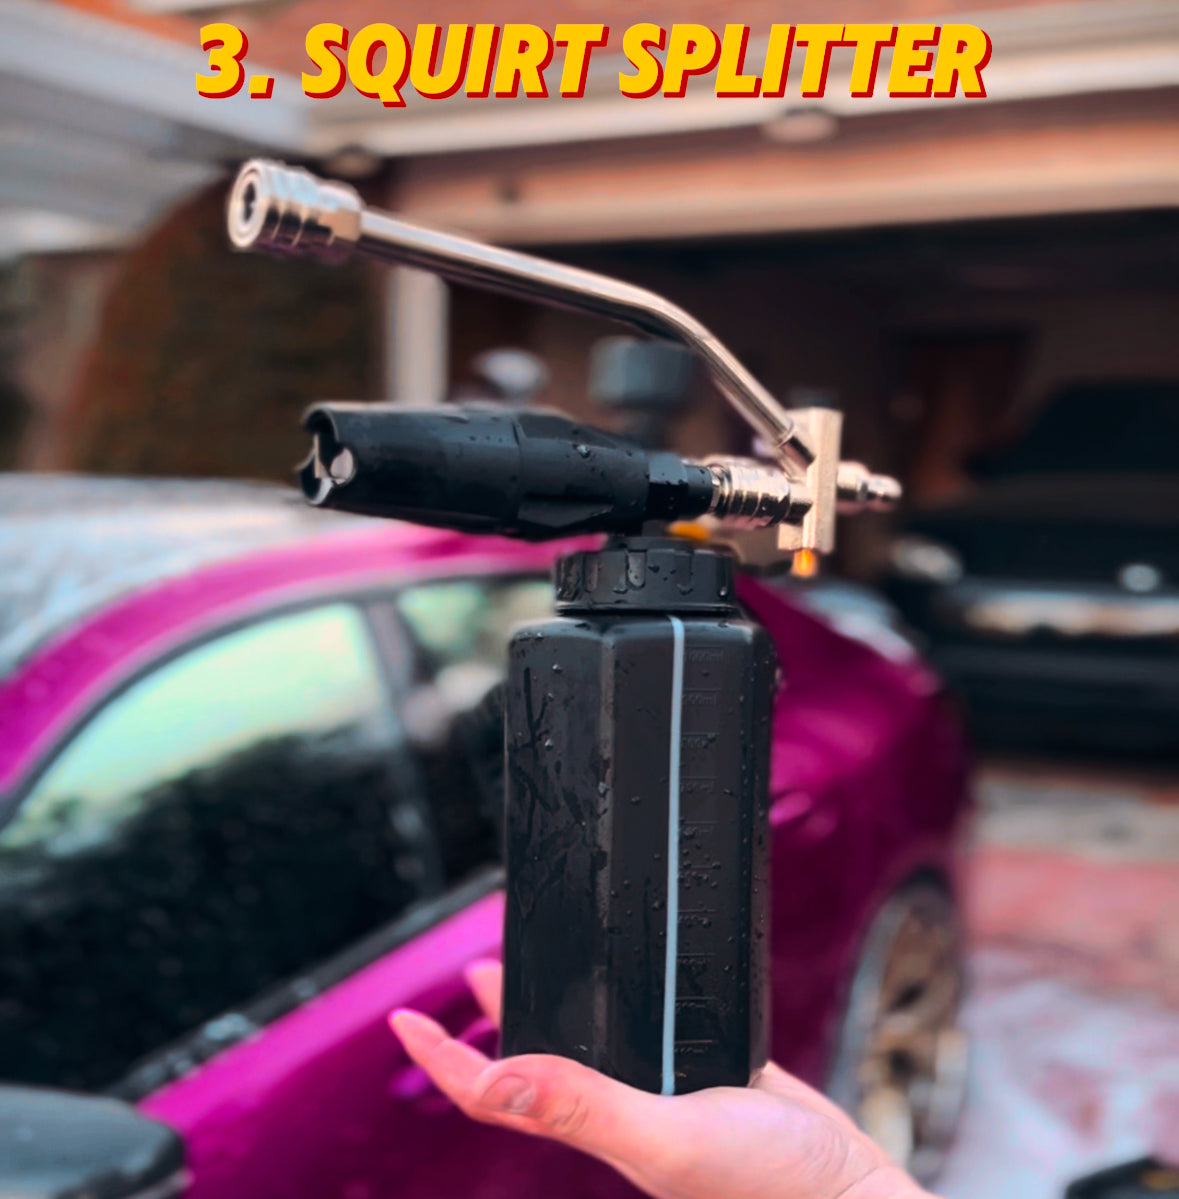 Squirt Splitter